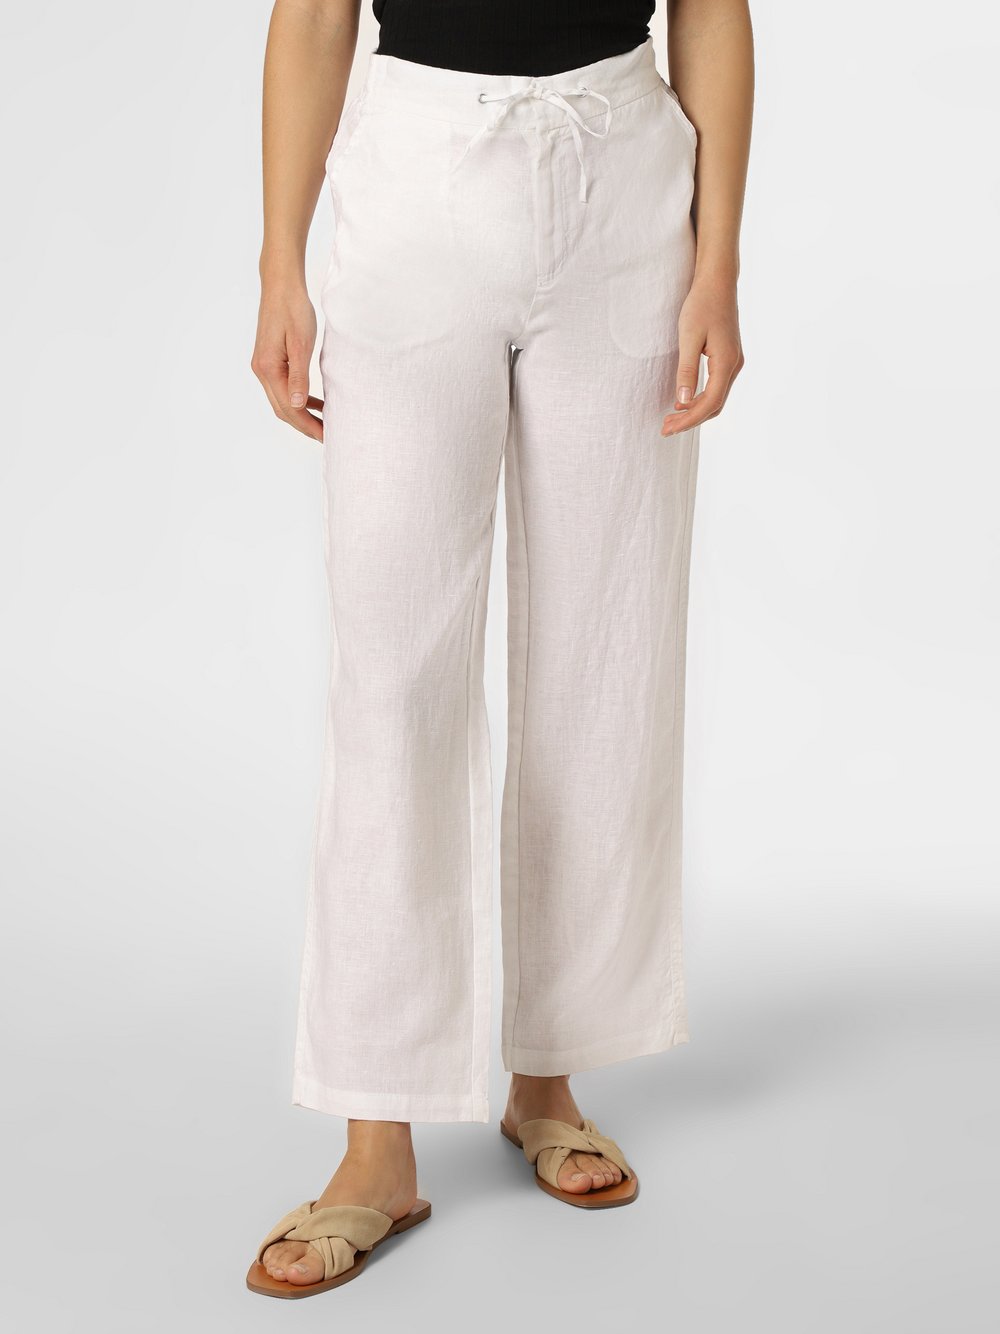 Fynch-Hatton - Damskie spodnie lniane, biały